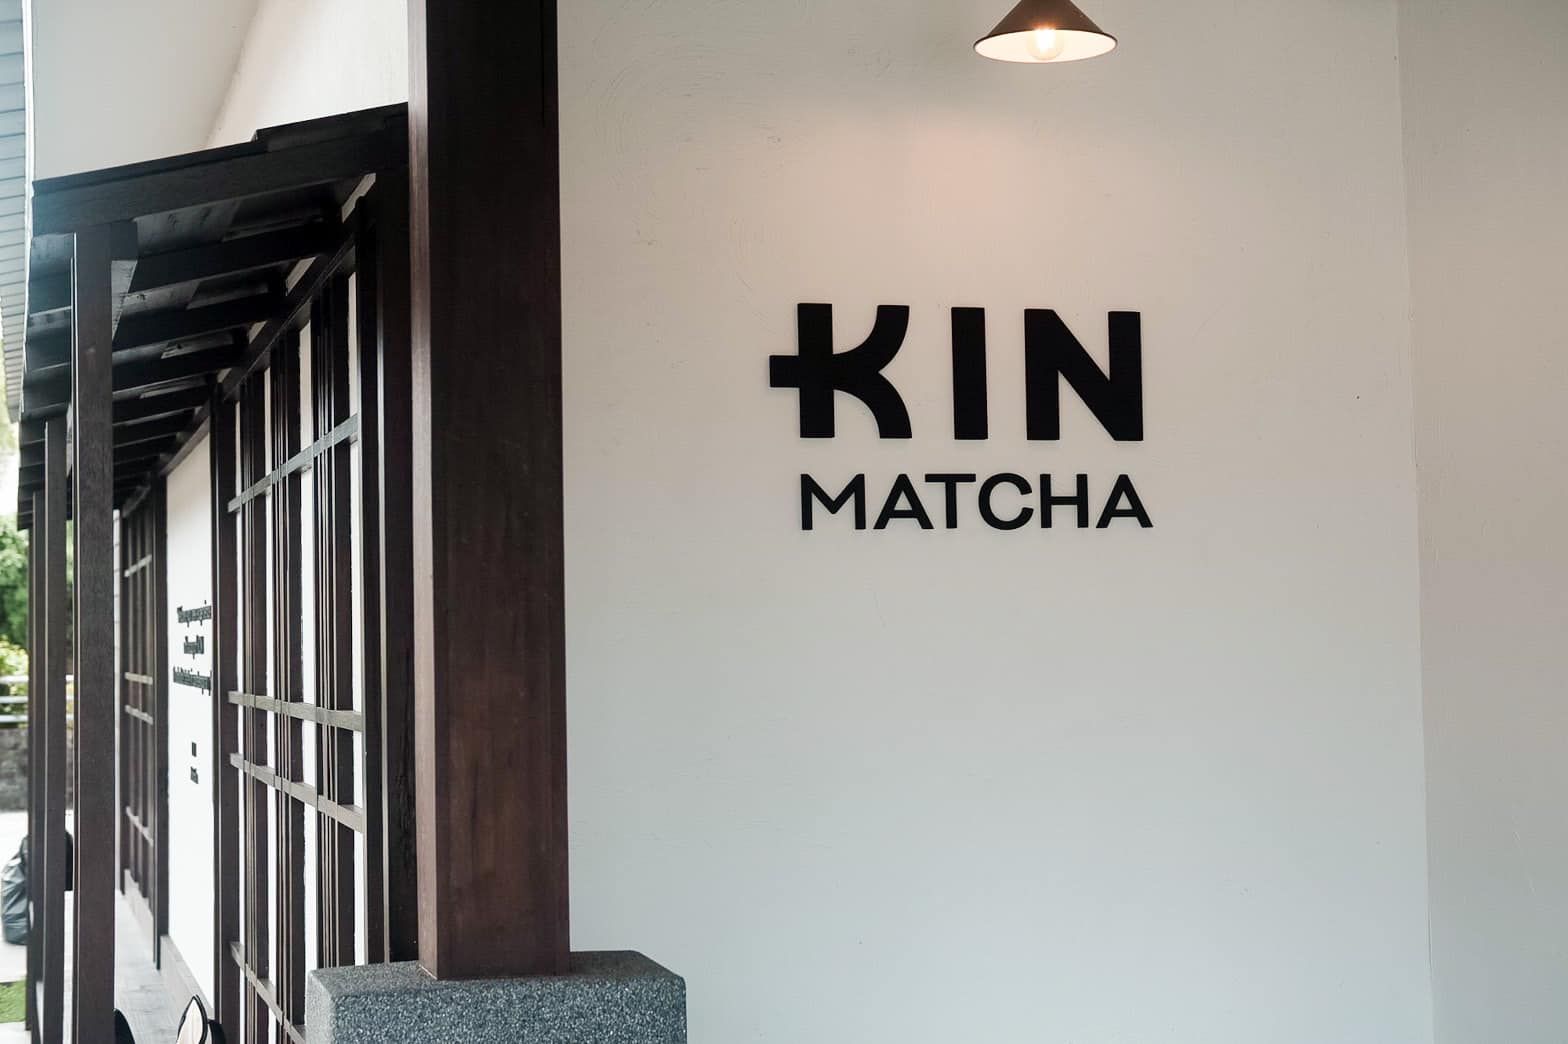 ร้าน KIN Matcha ที่ตั้งอยู่ในย่านมหาราช จังหวัดจันทบุรี เป็นคาเฟ่ชาและของว่างสไตล์ญี่ปุ่นที่มีความเป